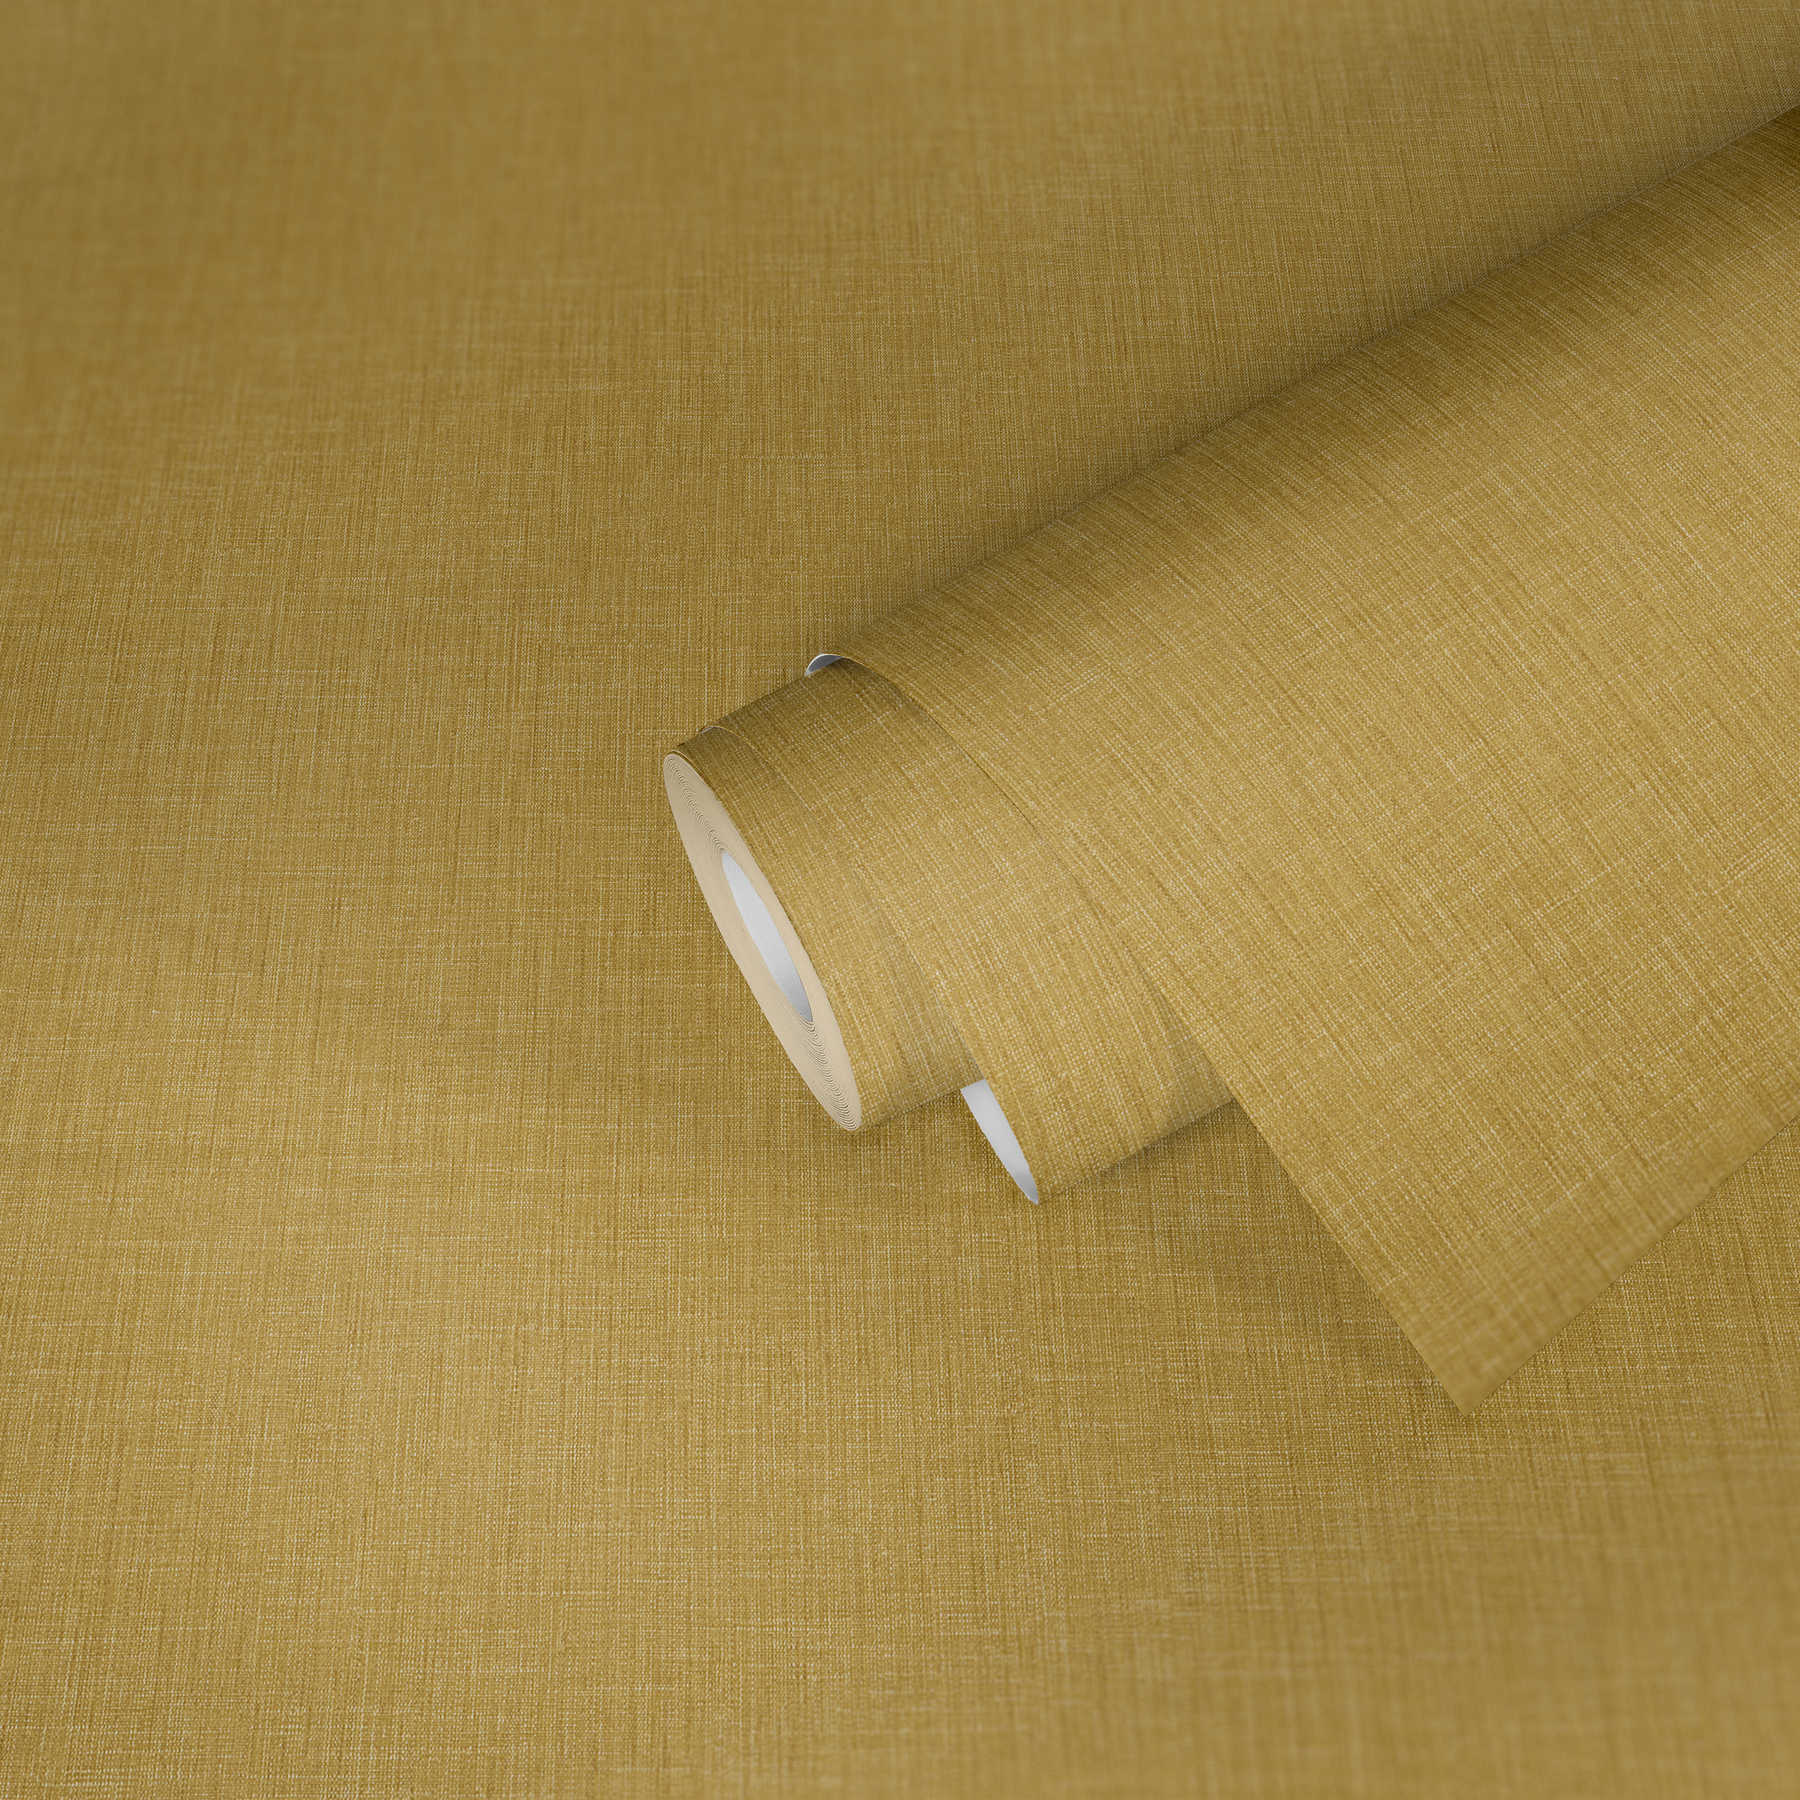             Uni Tapete mit textiler Struktur – Gelb
        